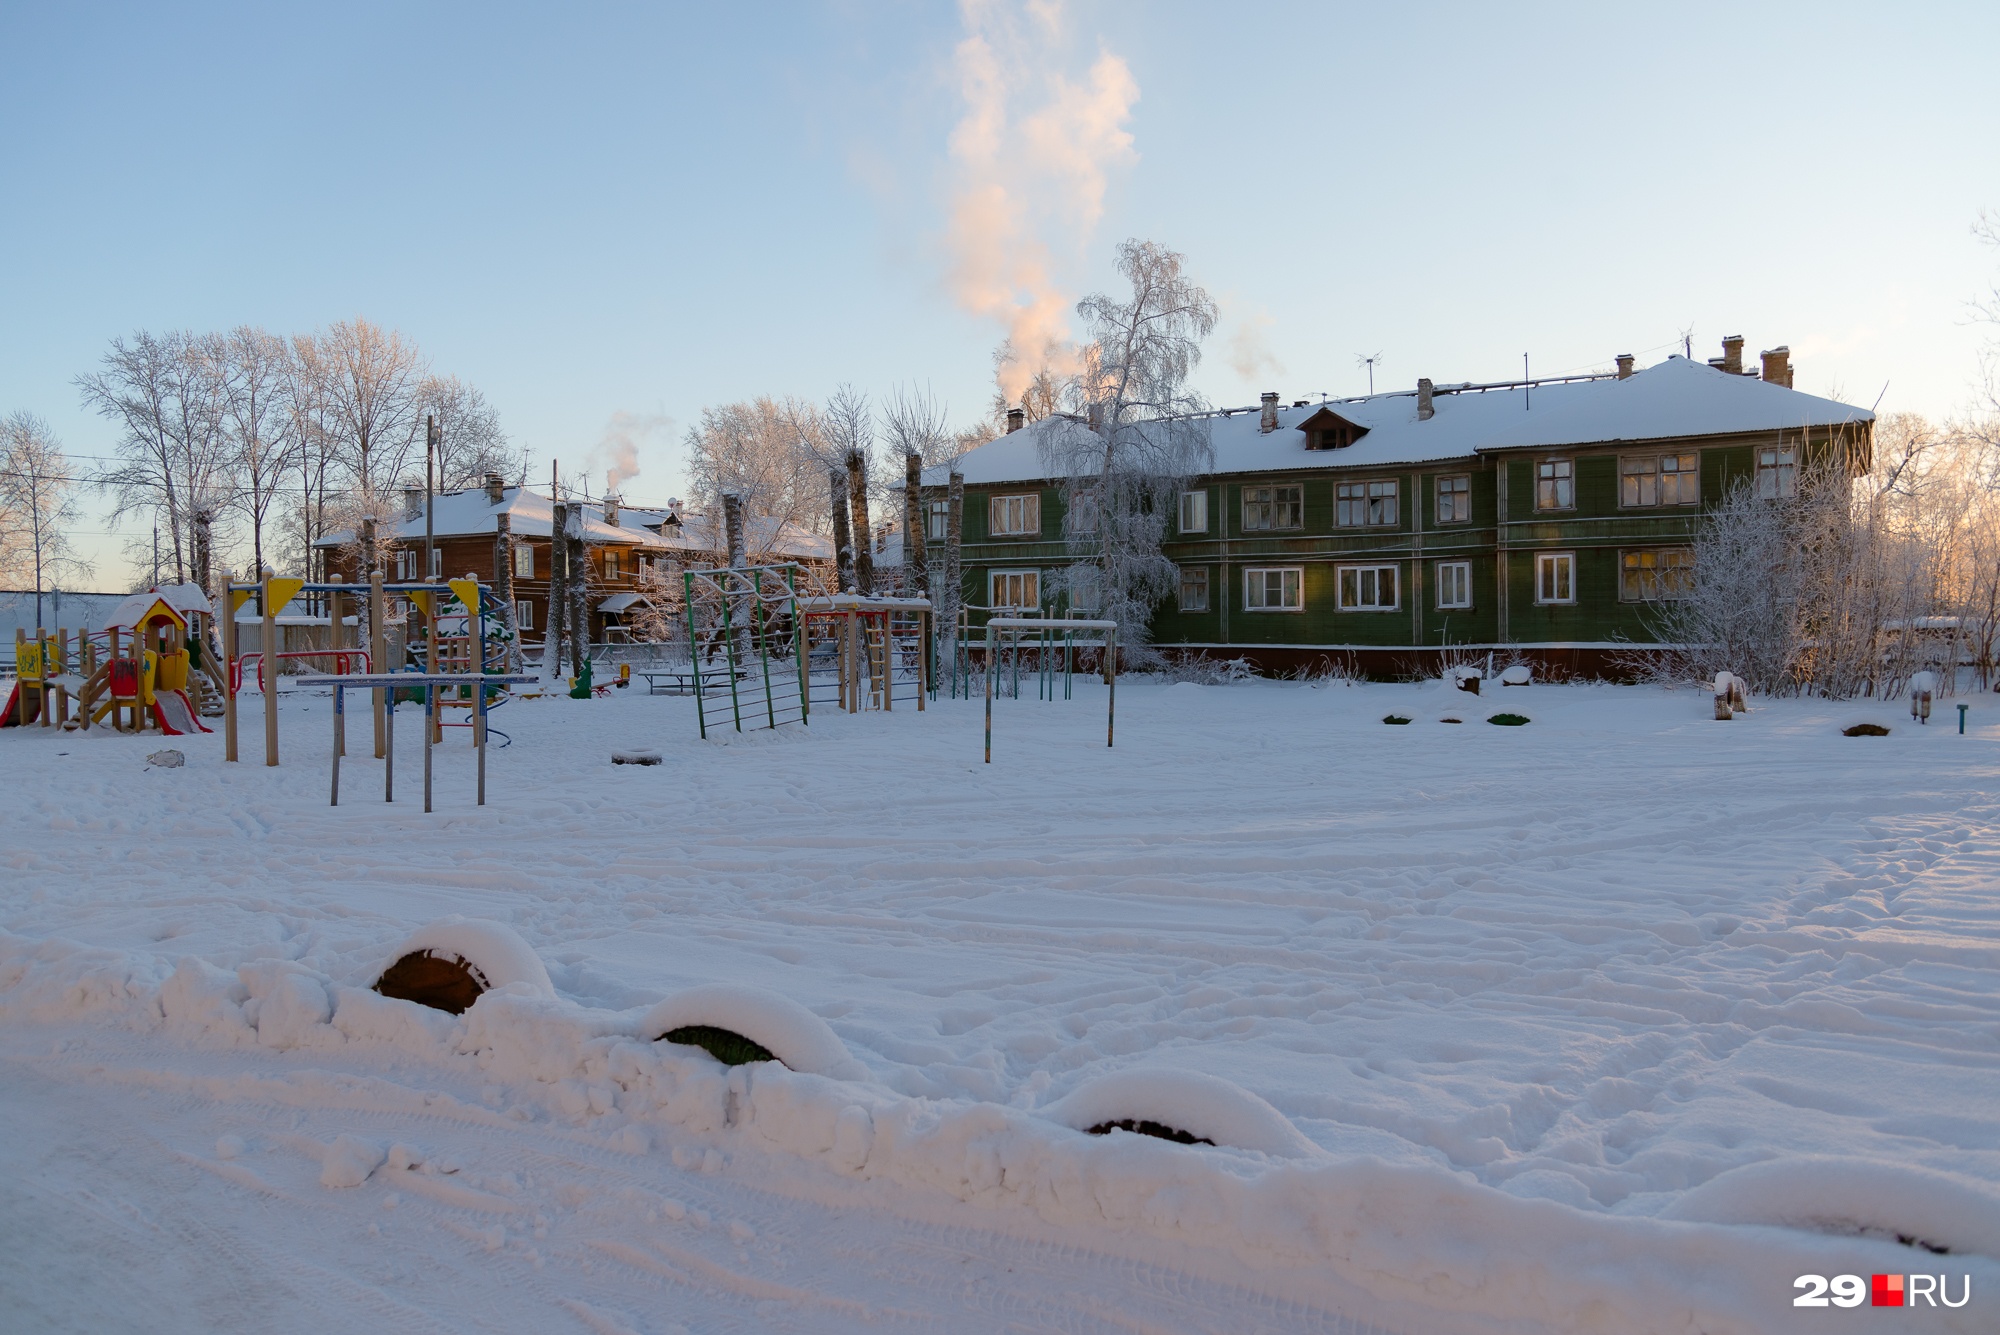 Детская площадка и школа были пусты — слишком холодный день